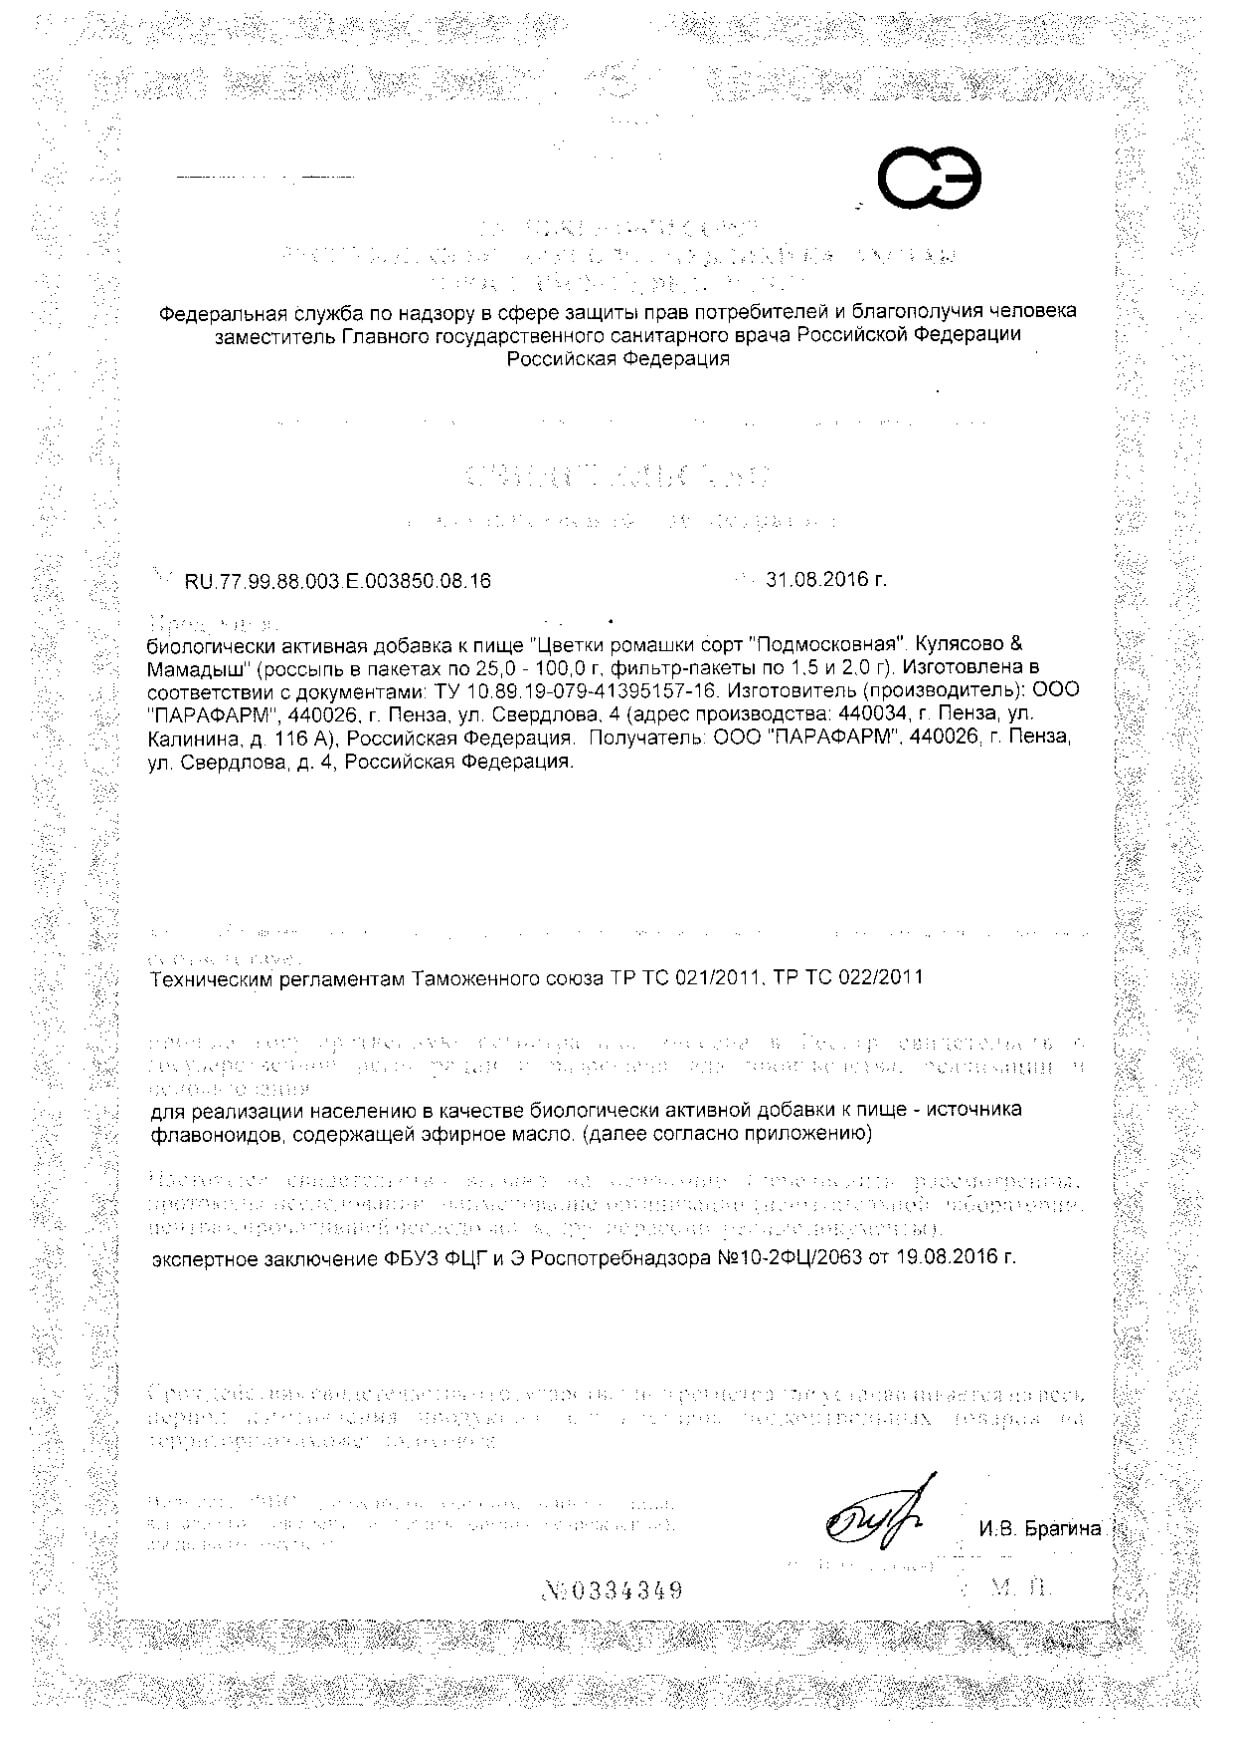 Ромашки цветки сорт Подмосковная Кулясово&Мамадыш 50г: сертификат